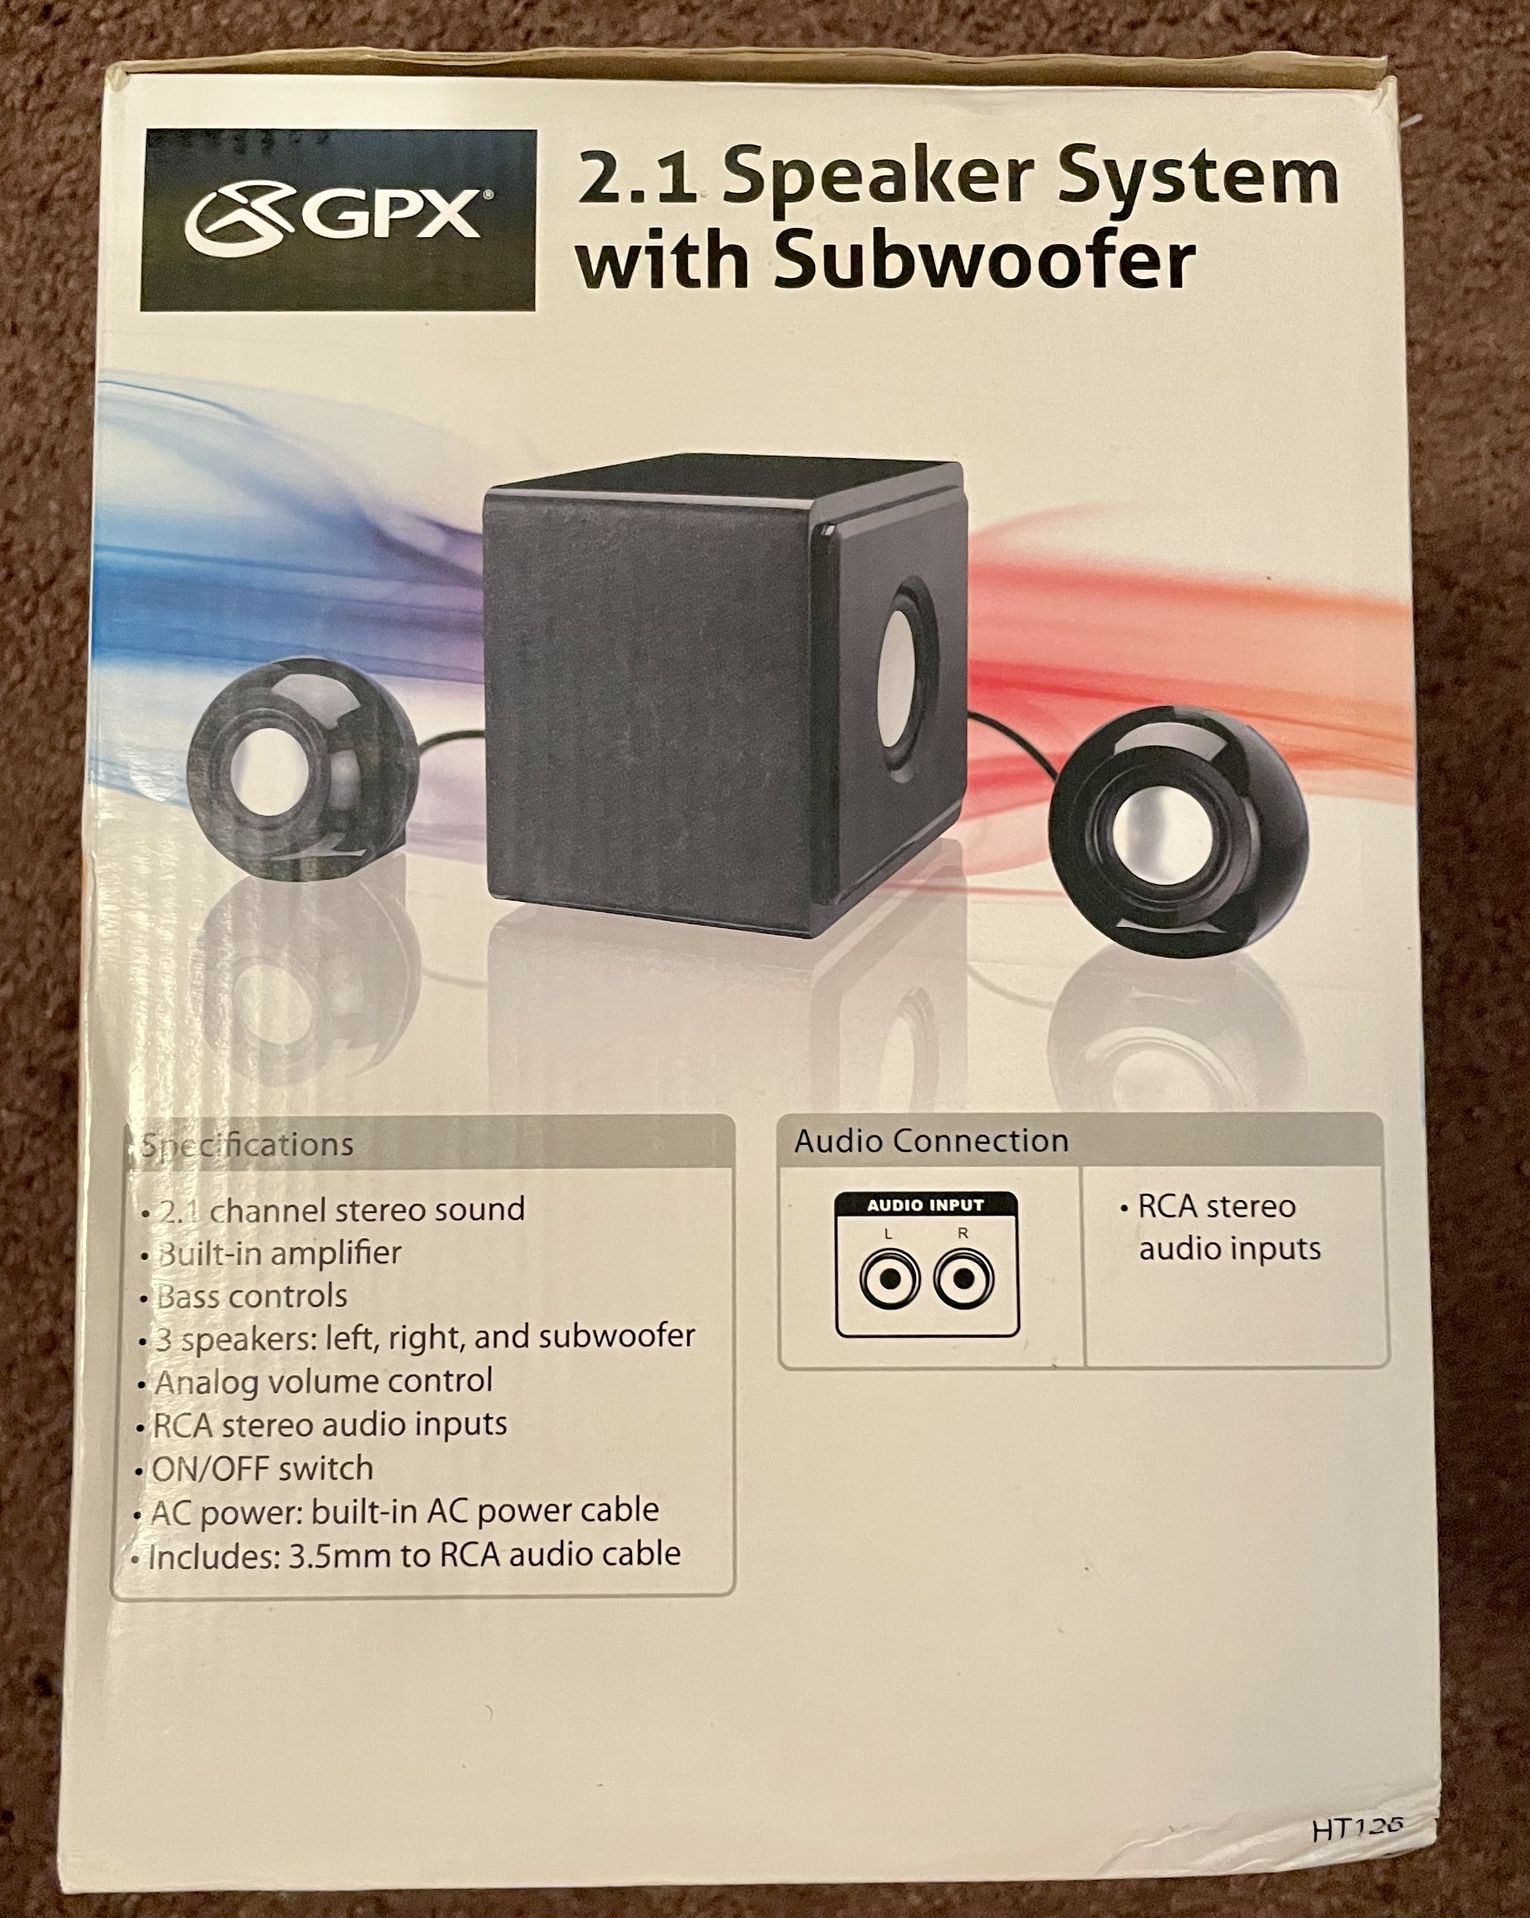 GPX Surround Sound 5.1 Speaker System